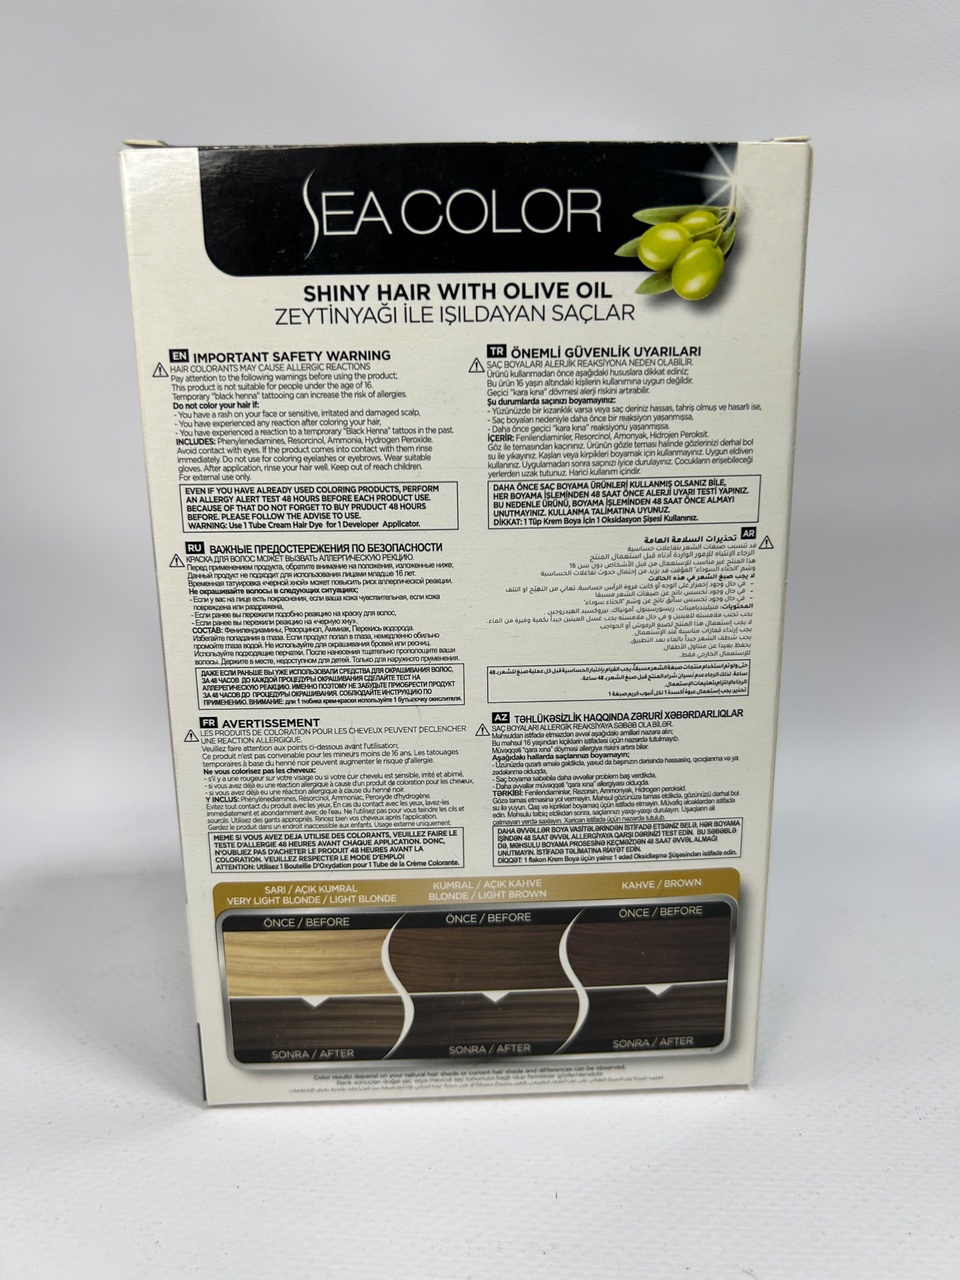 Sea Color 7.11 Краска д/волос «Интенсивно пепельно-русый» - 300 ₽, заказать онлайн.